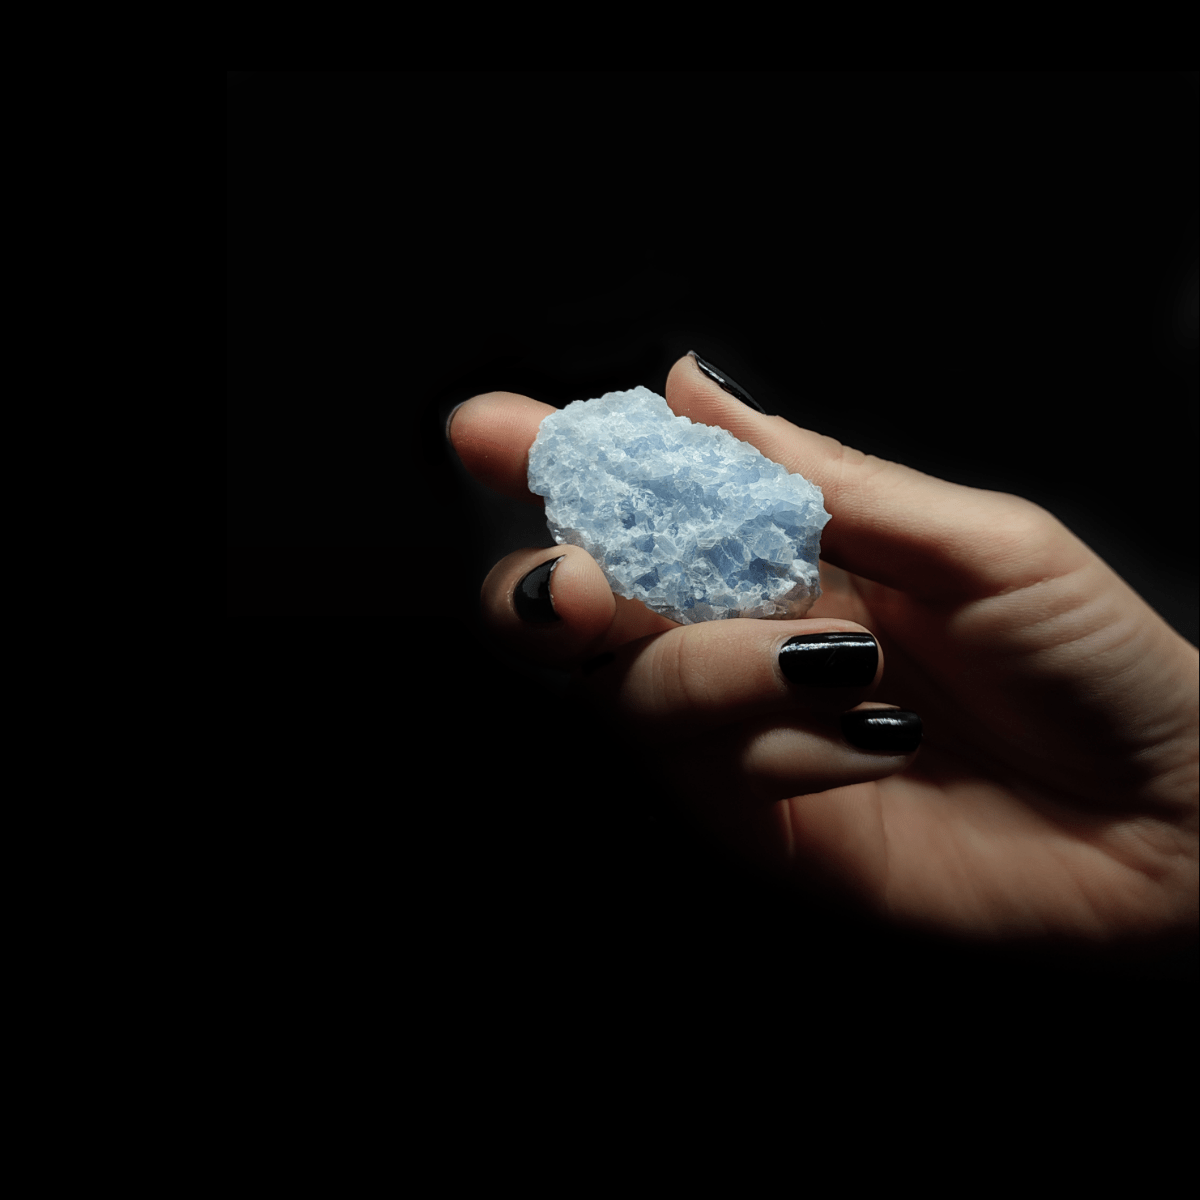 Frauenhand die einen blauen Calcit Rohstein hält. Der Calcit selbst weist eine ausgeprägte Kristallstruktur auf.